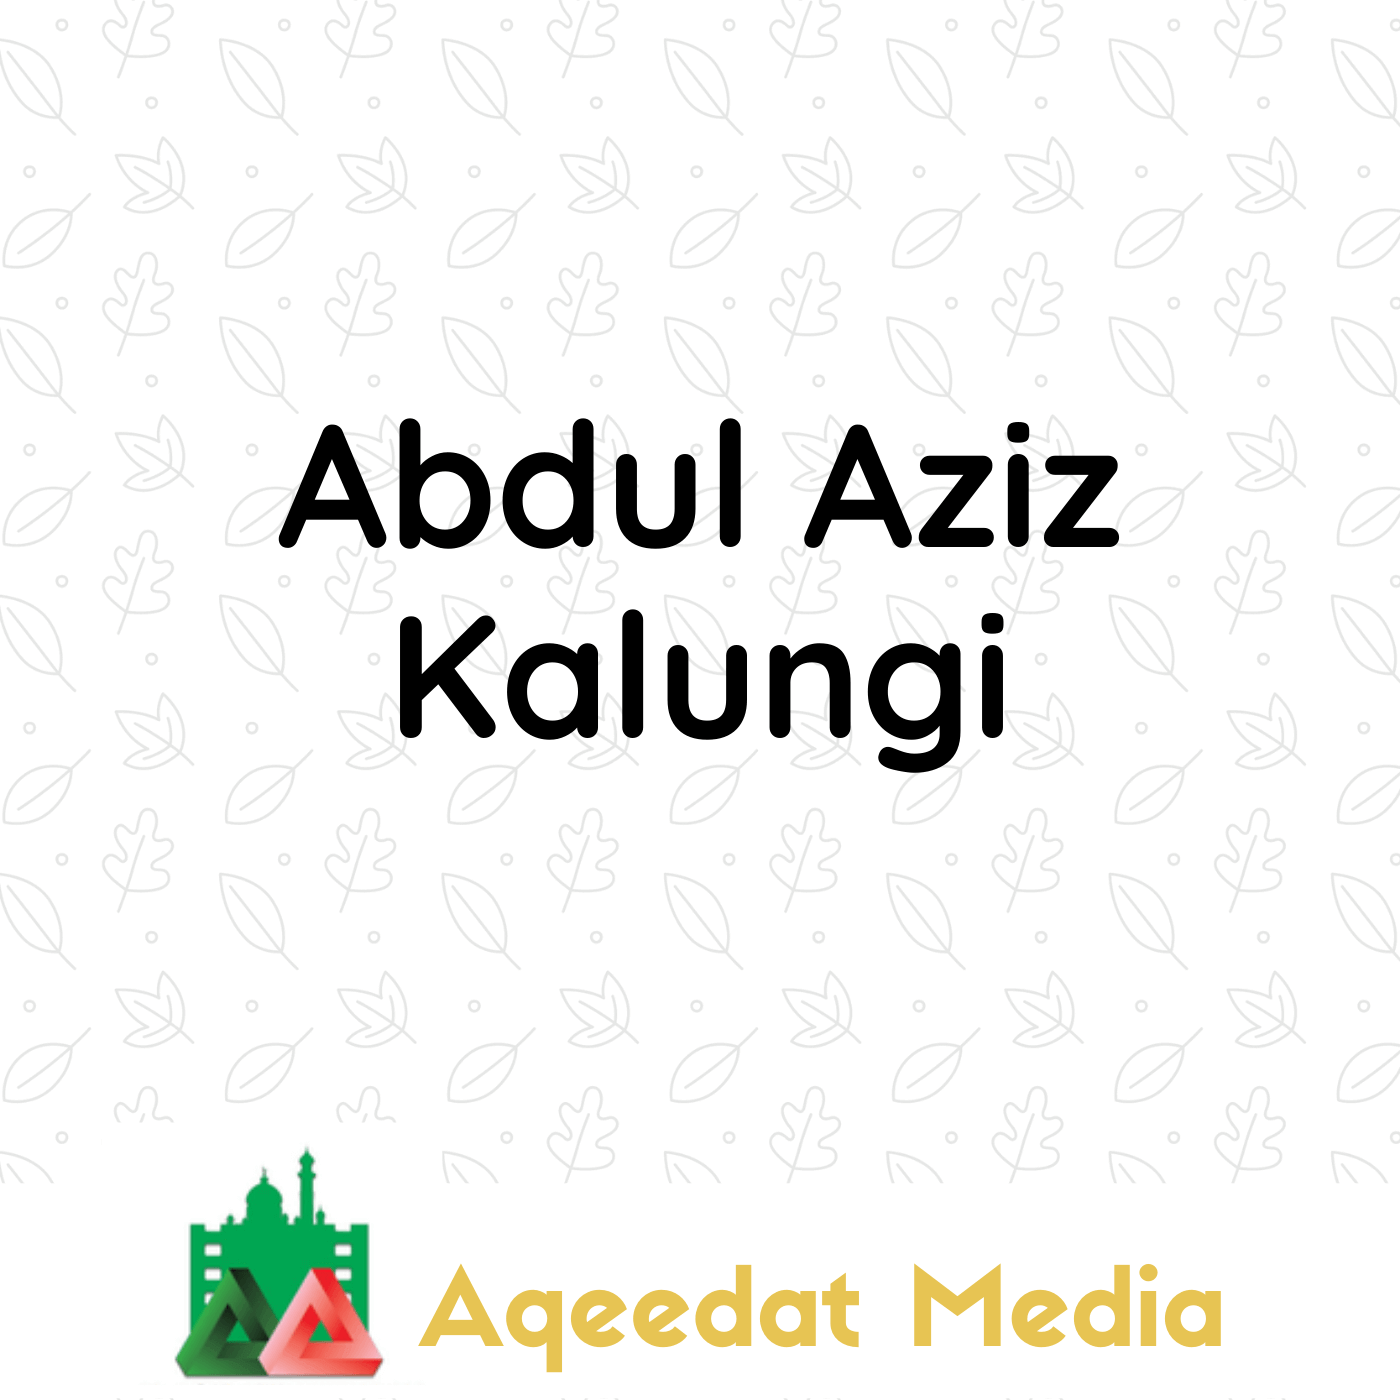  Abdul Aziz Kalungi